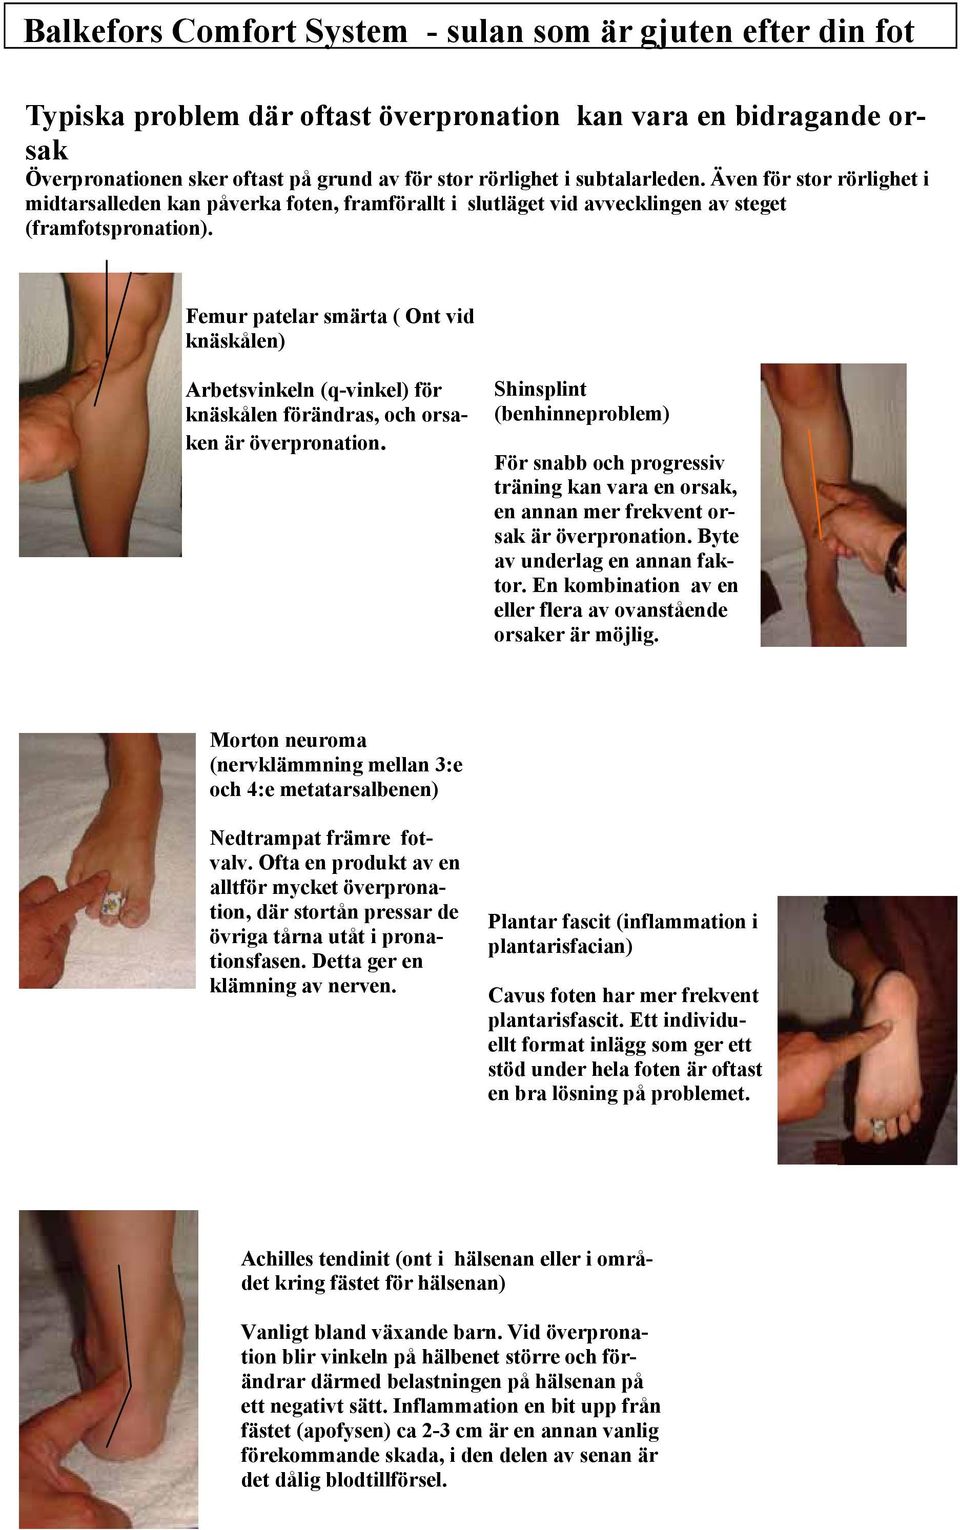 Femur patelar smärta ( Ont vid knäskålen) Arbetsvinkeln (q-vinkel) för knäskålen förändras, och orsaken är överpronation.